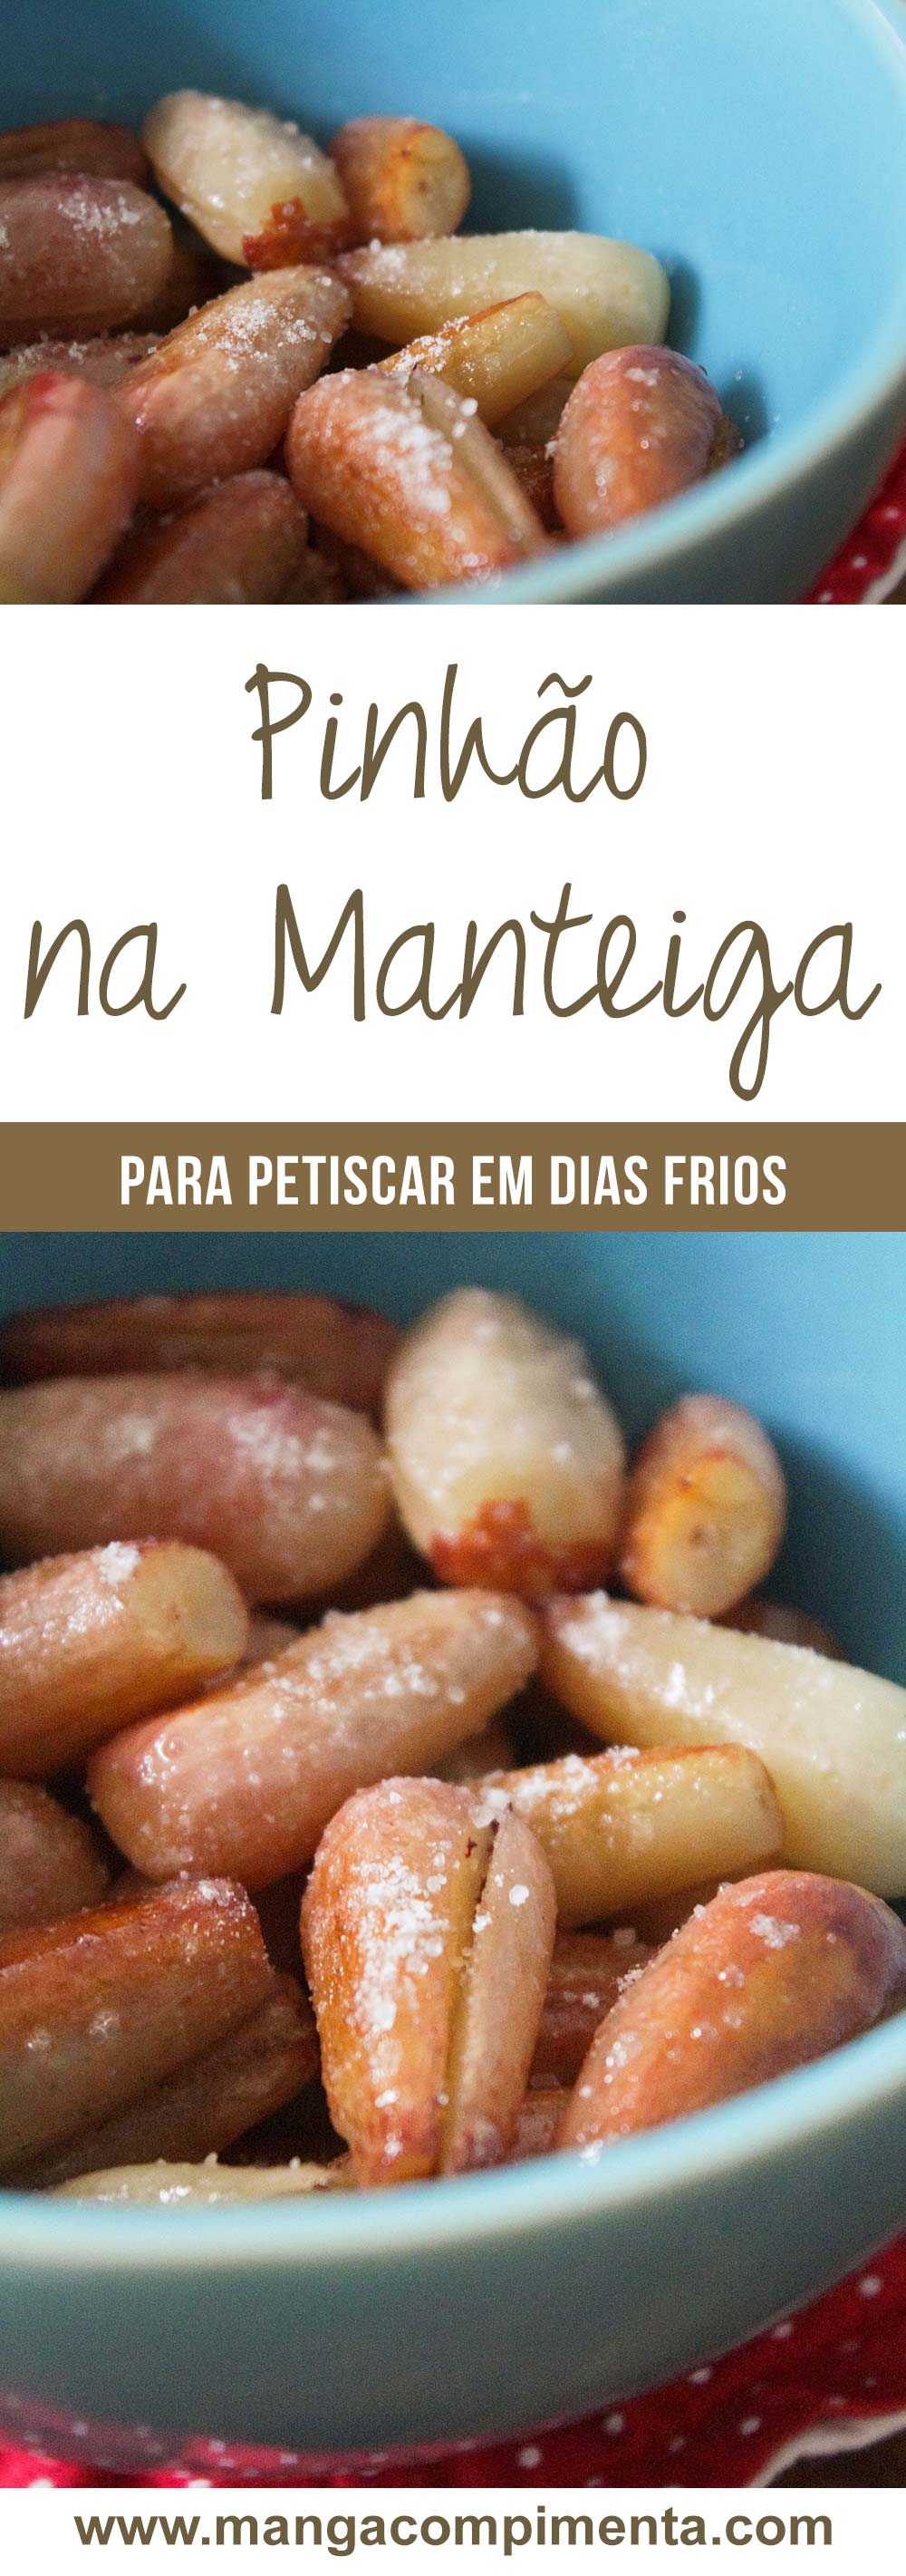 Pinhão na Manteiga - Um petisco delicioso para comer em dias frios das festas juninas.